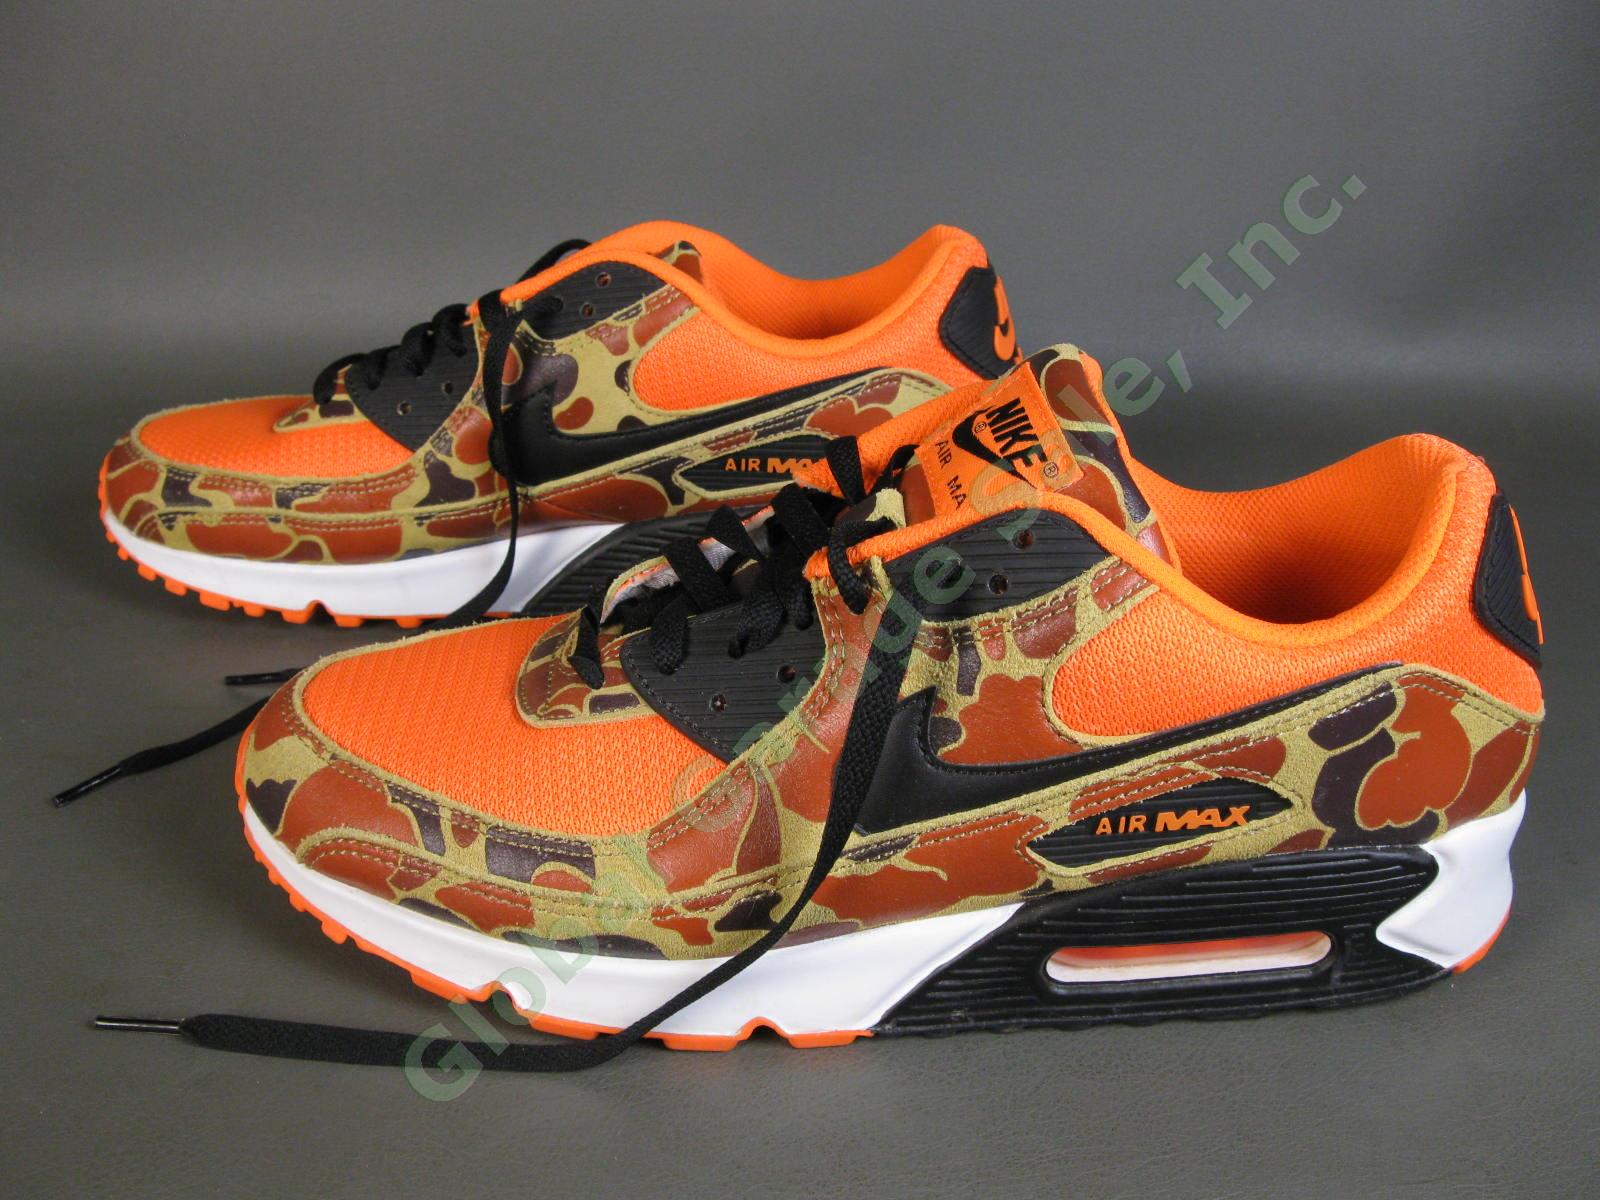 Nike Air Max 90 Orange Duck Camo Shoes CW4039-800 US Men Size 12 Excellent Shape